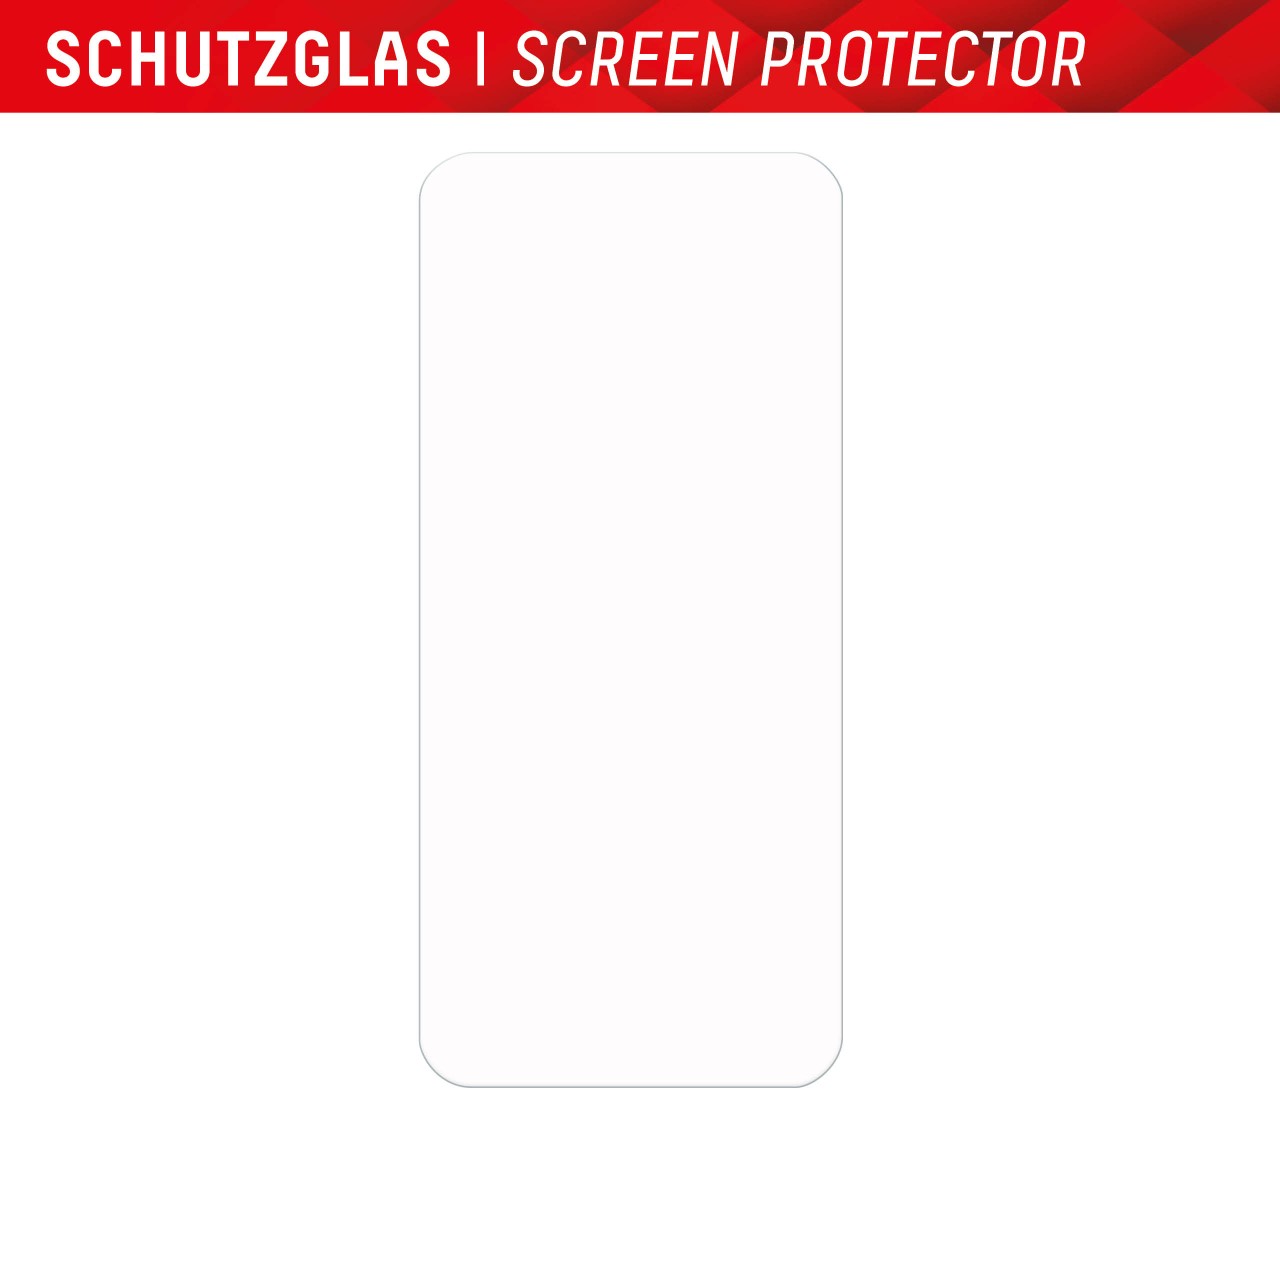 Samsung Galaxy A54 5G Screen Protector (2D) + Case